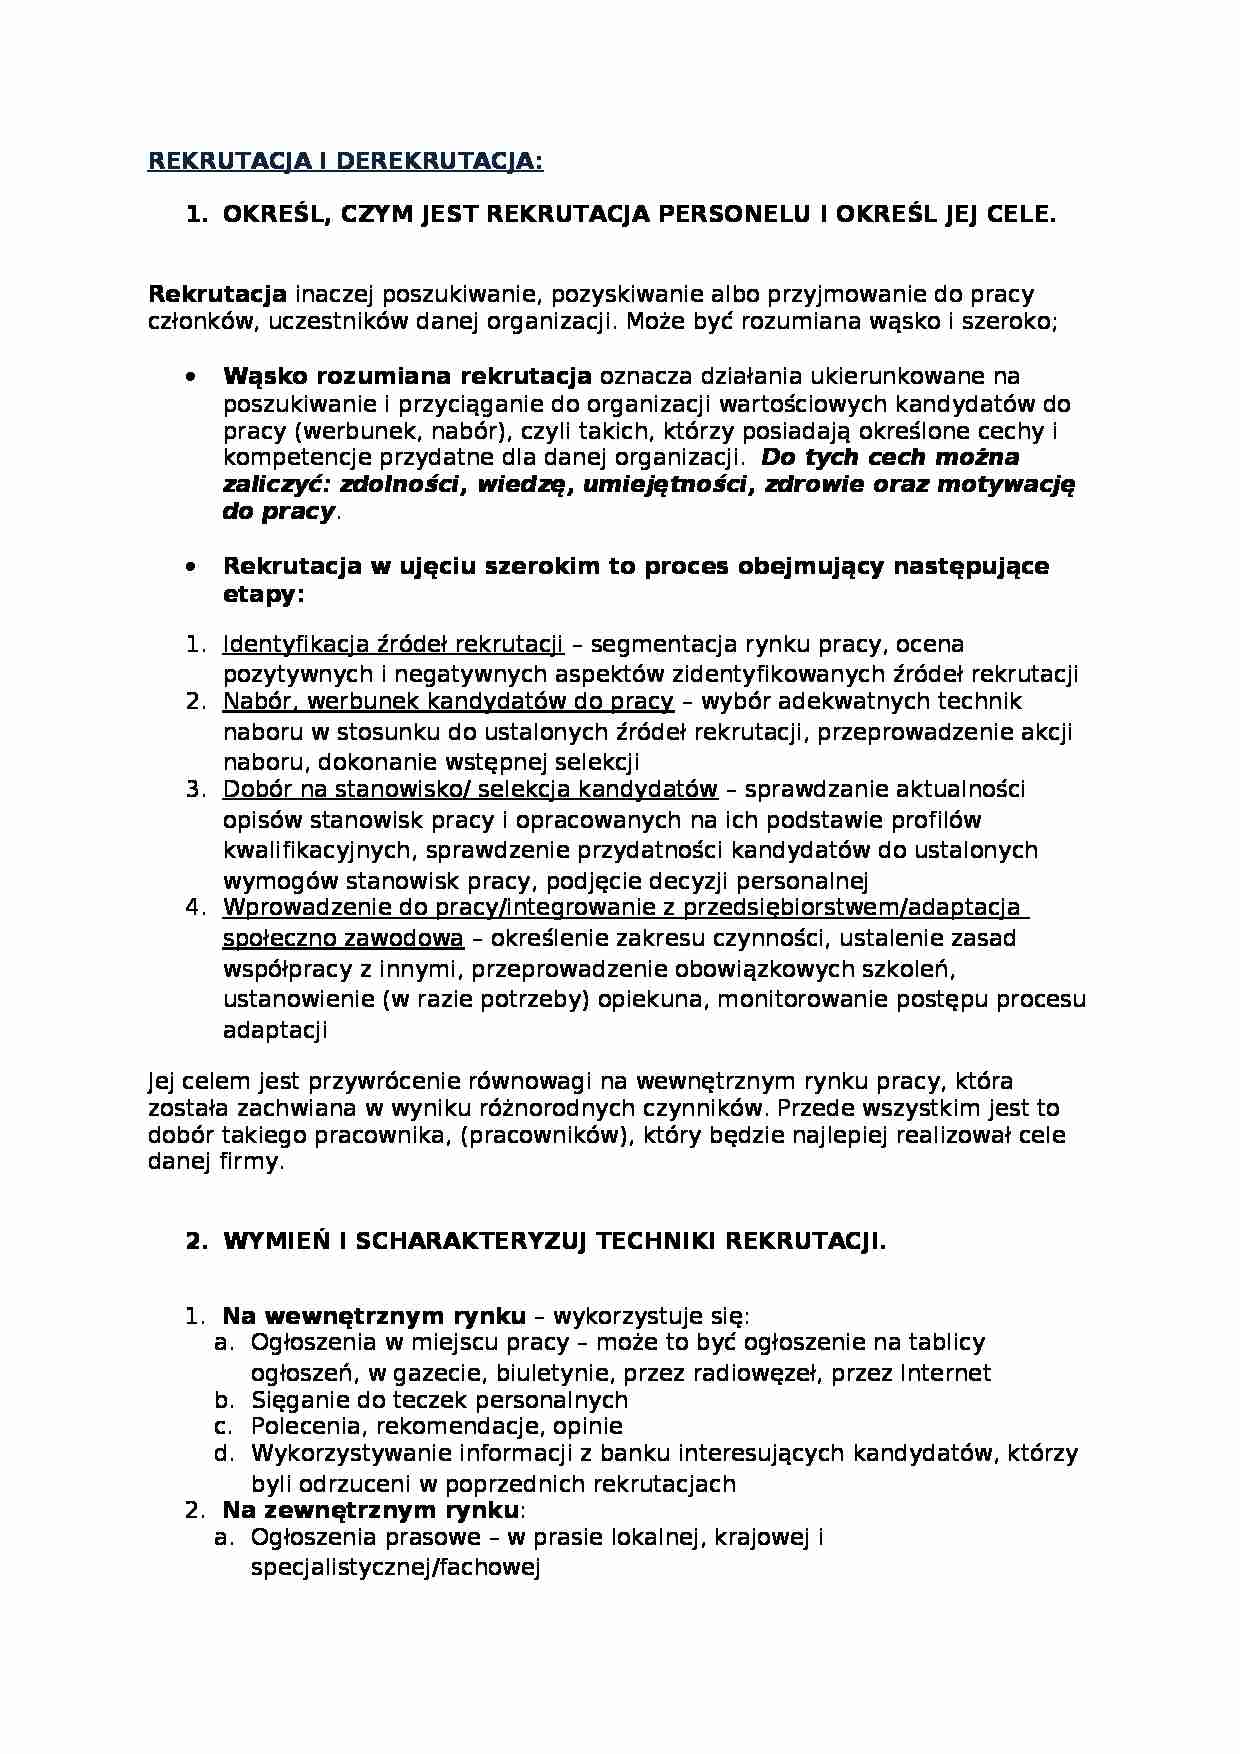 Zarządzanie zasobami ludzkimi - rekrutacja, derekrutacja, ocenianie i wynagradznie. wykłady dr Piechnik - Kurdziel - strona 1